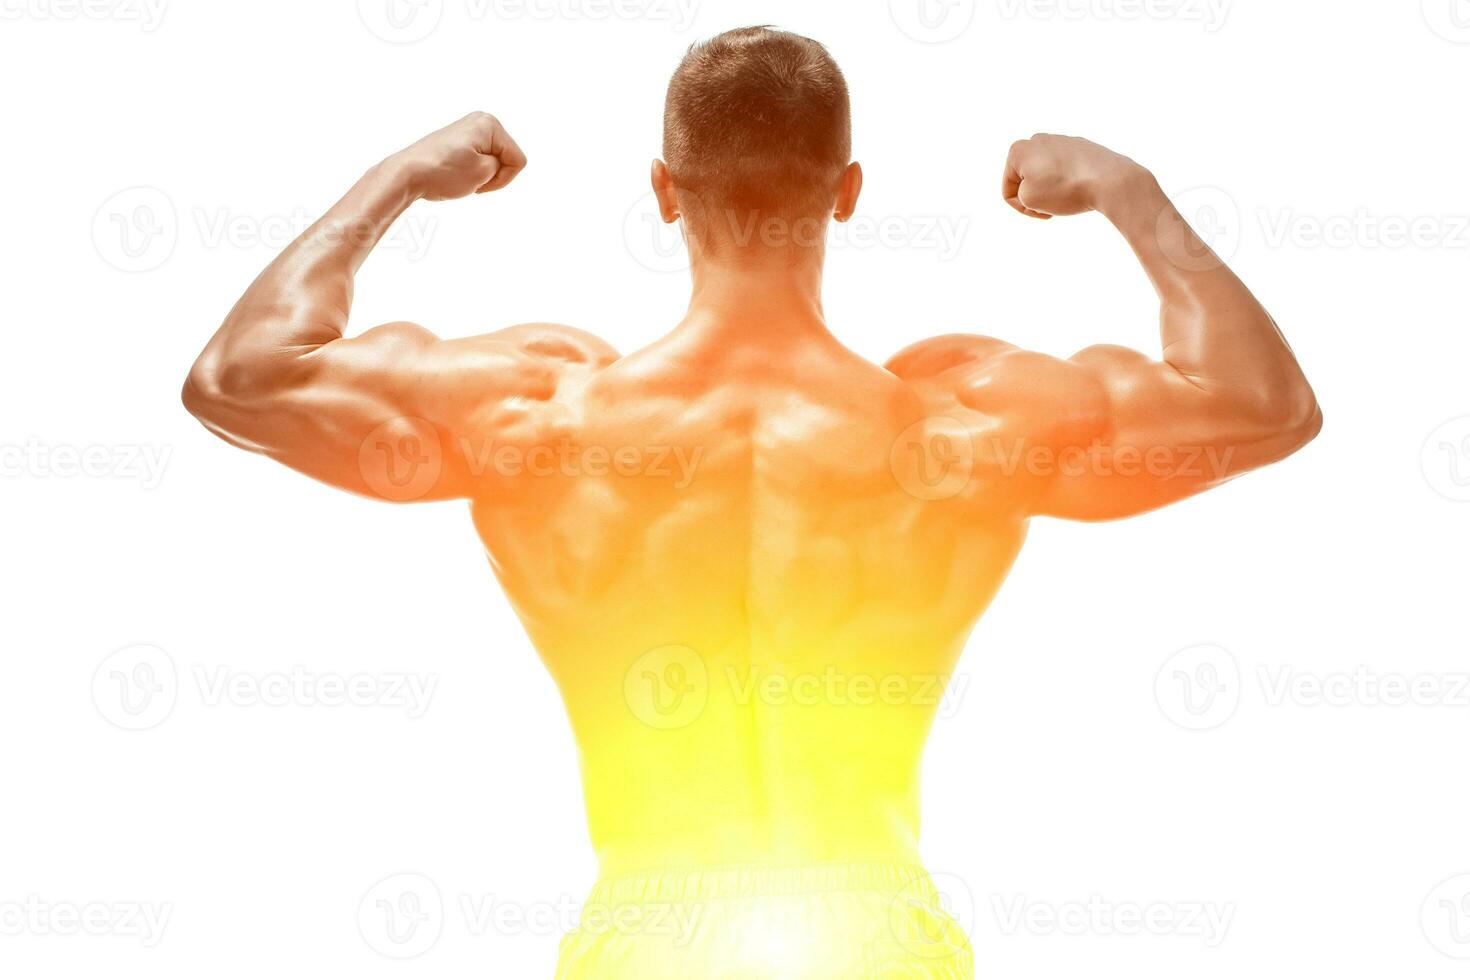 image de muscle homme posant dans studio photo